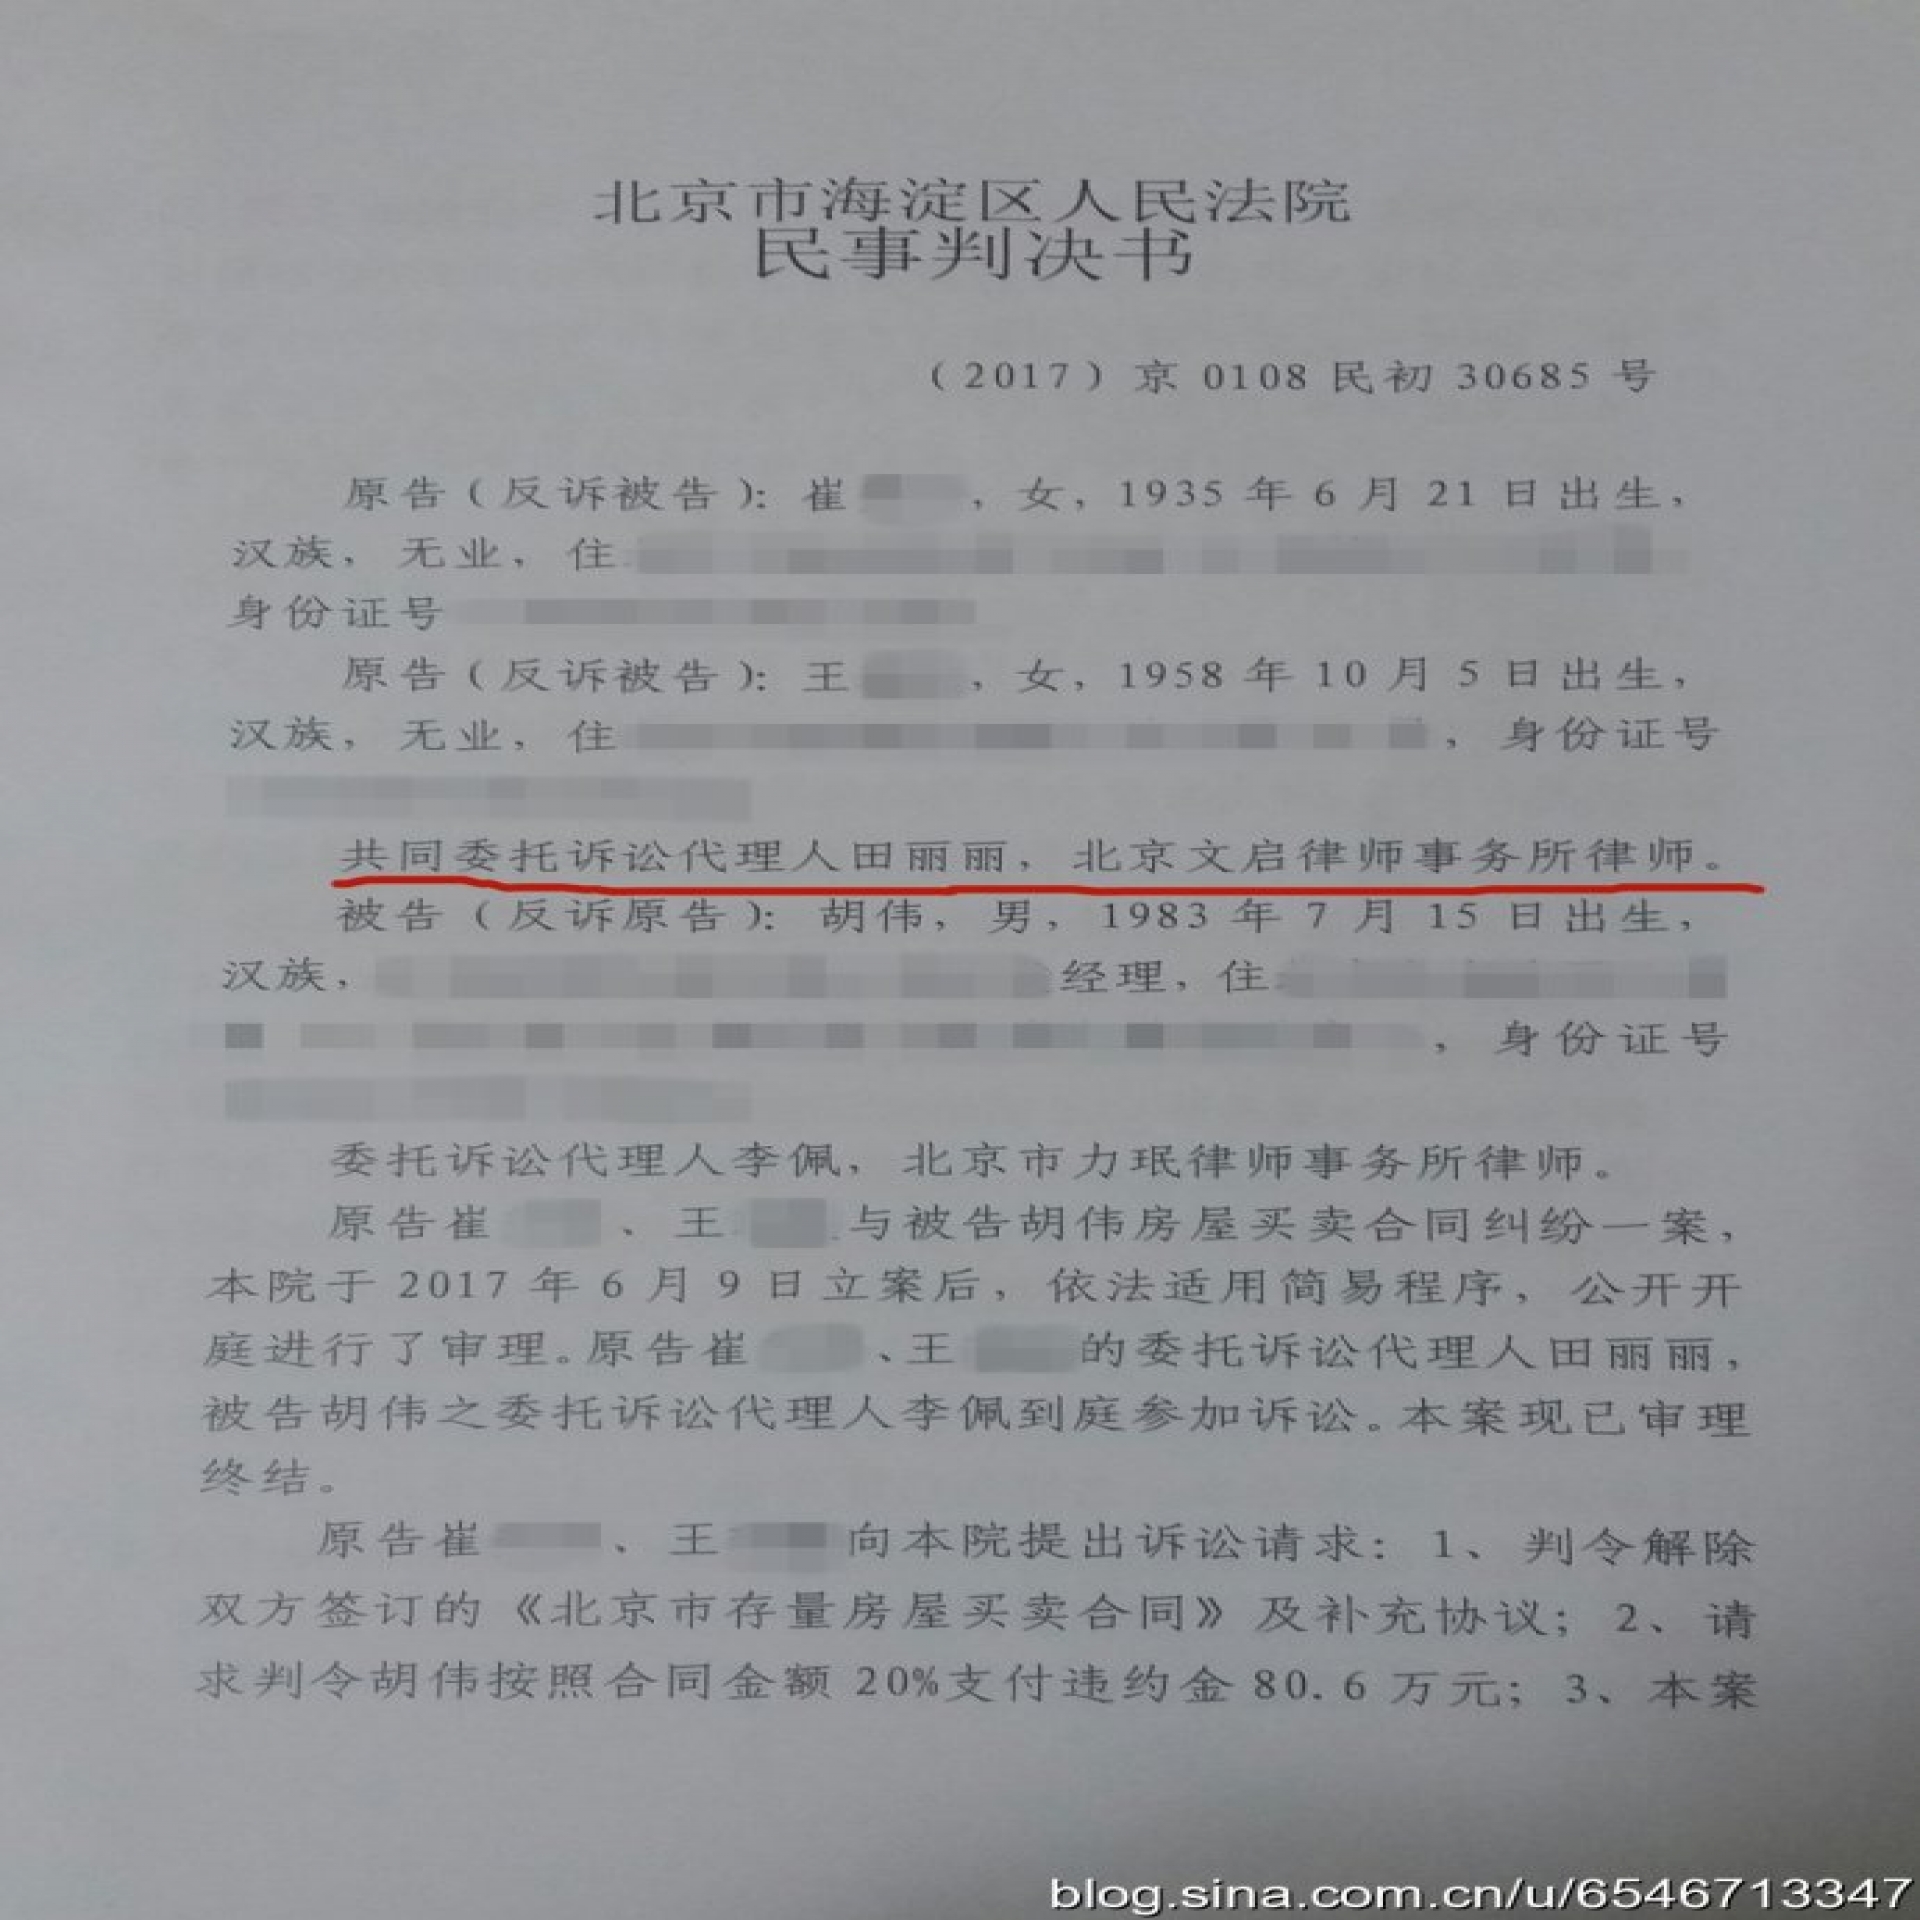 广州律师代理崔某等人房屋买卖合同纠纷一案胜诉